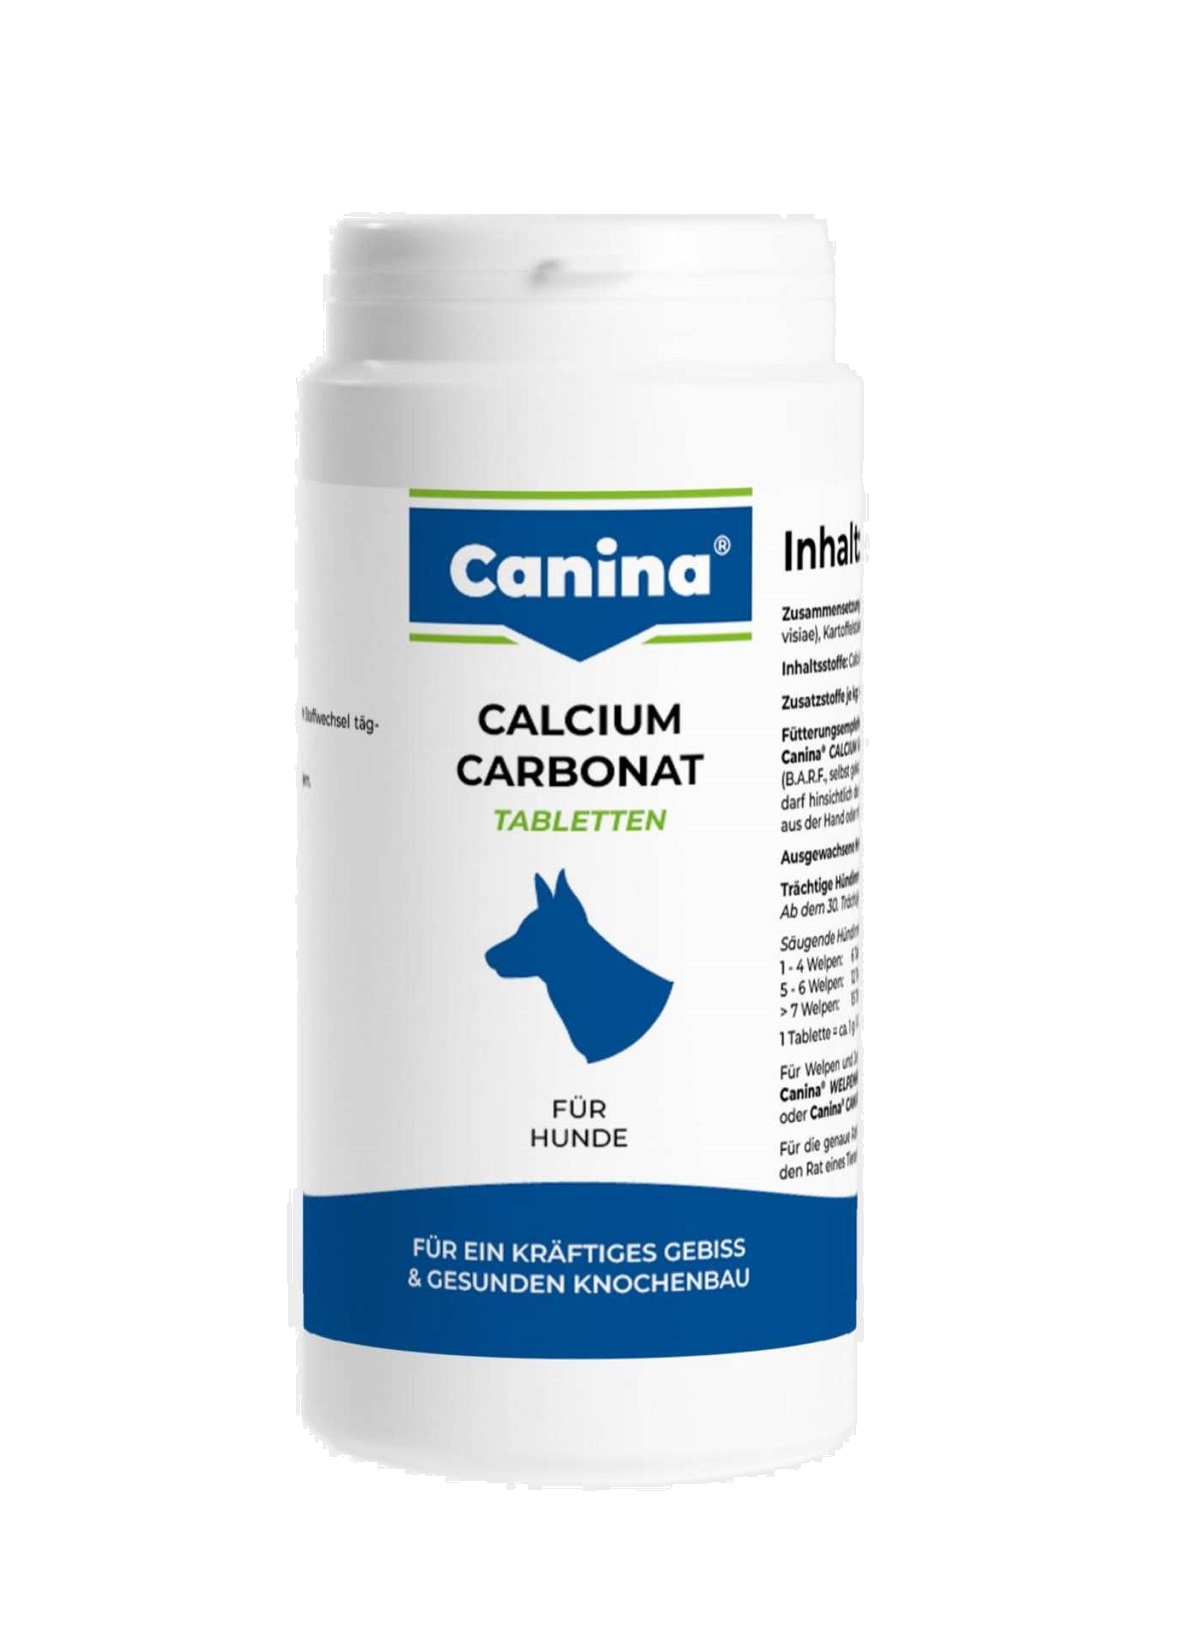 CANINA Calcium Carbonat tbl.350g